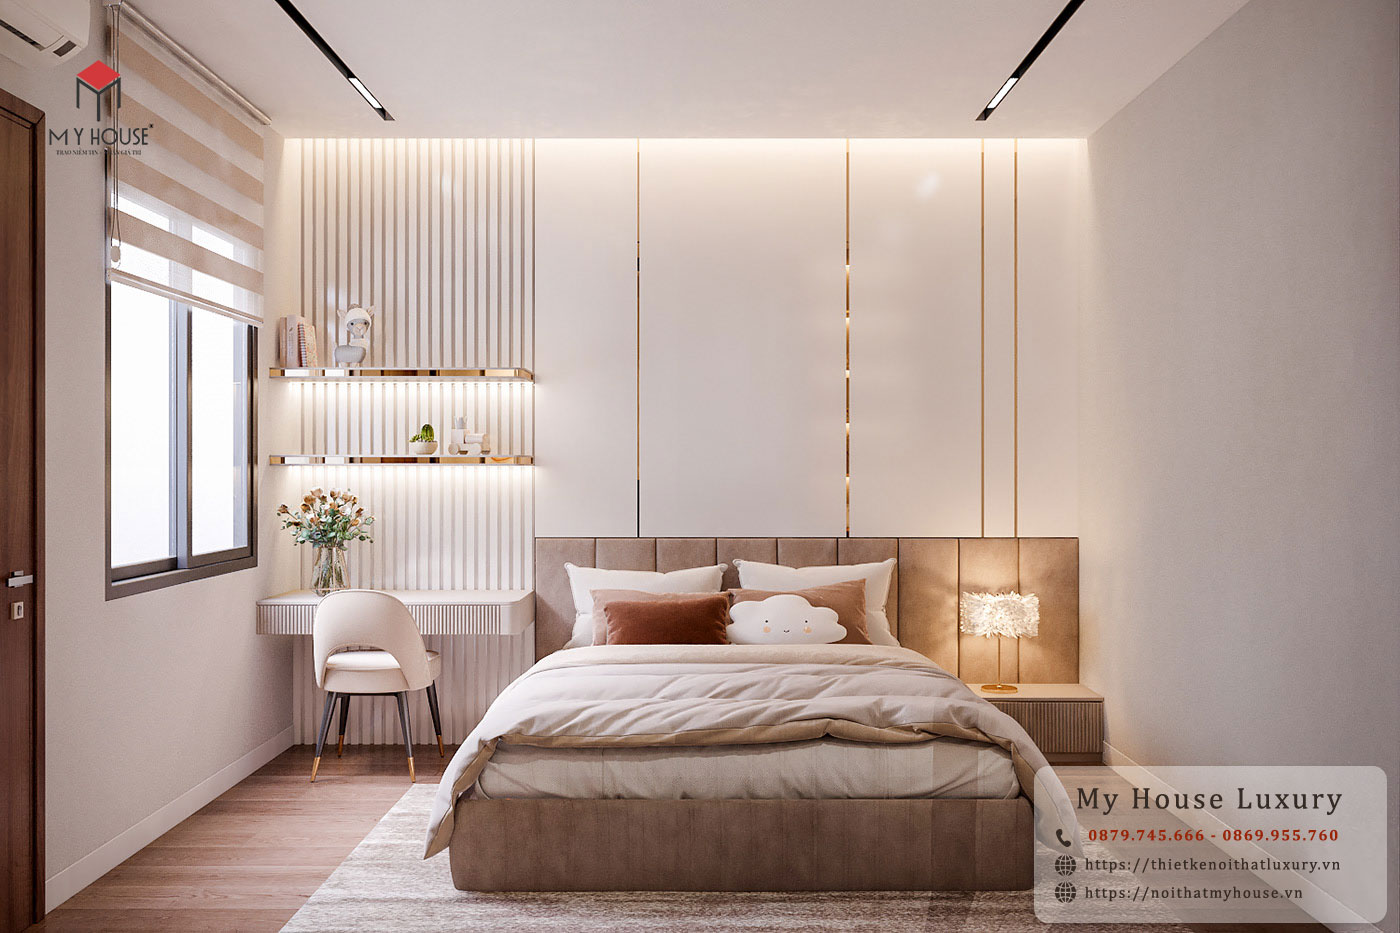 Phòng ngủ được thiết kế hợp lý vừa đảm bảo tính thẩm mỹ vừa đáp ứng công năng